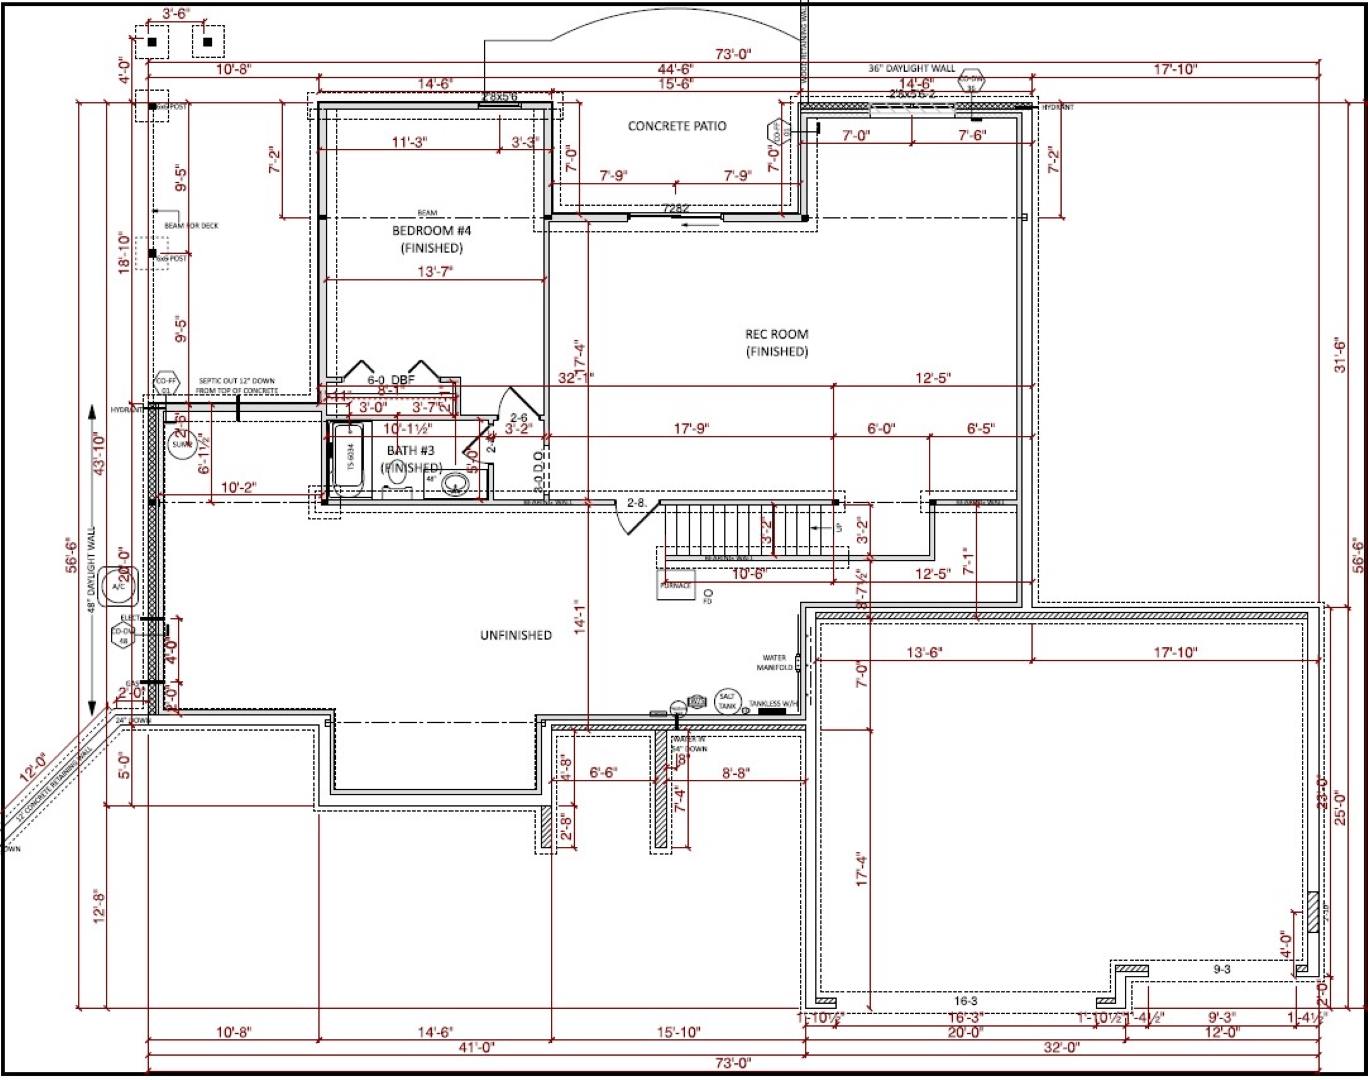 Basement Floor Plan floorplan